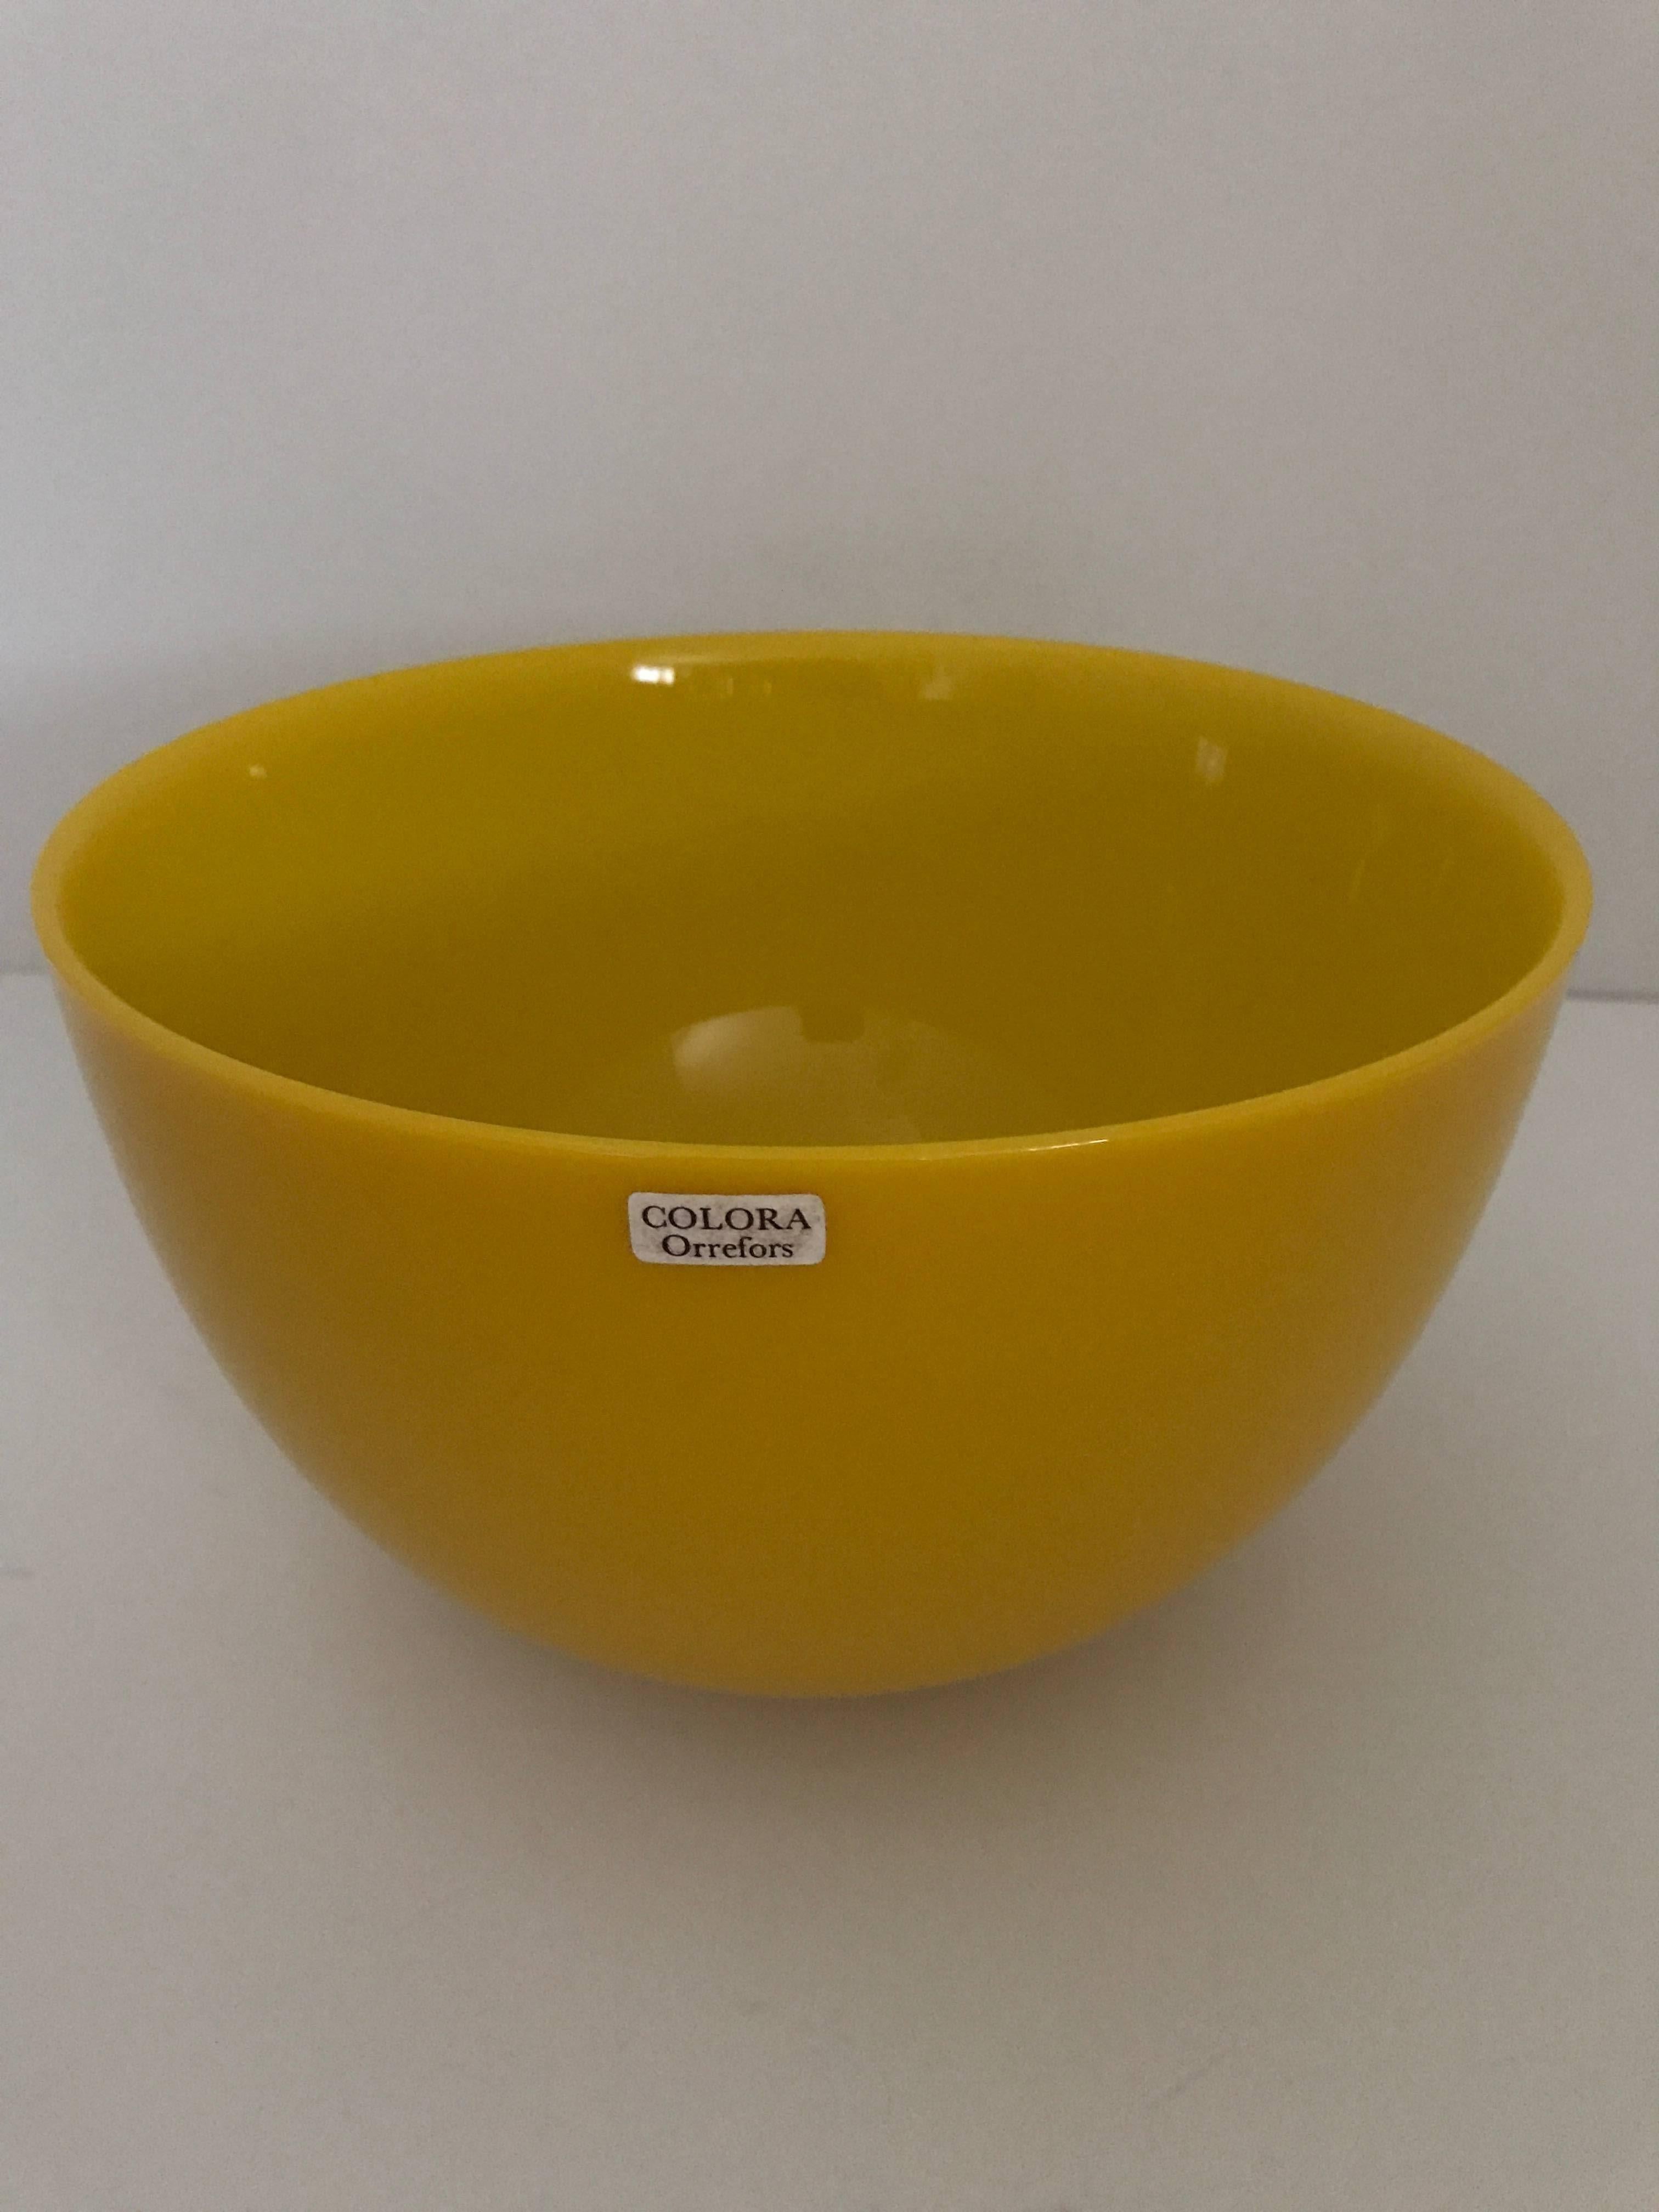 Glass Mid-20th Century Swedish Orrefors Colora Bowls Four Pieces Set Sven Palmqvist For Sale